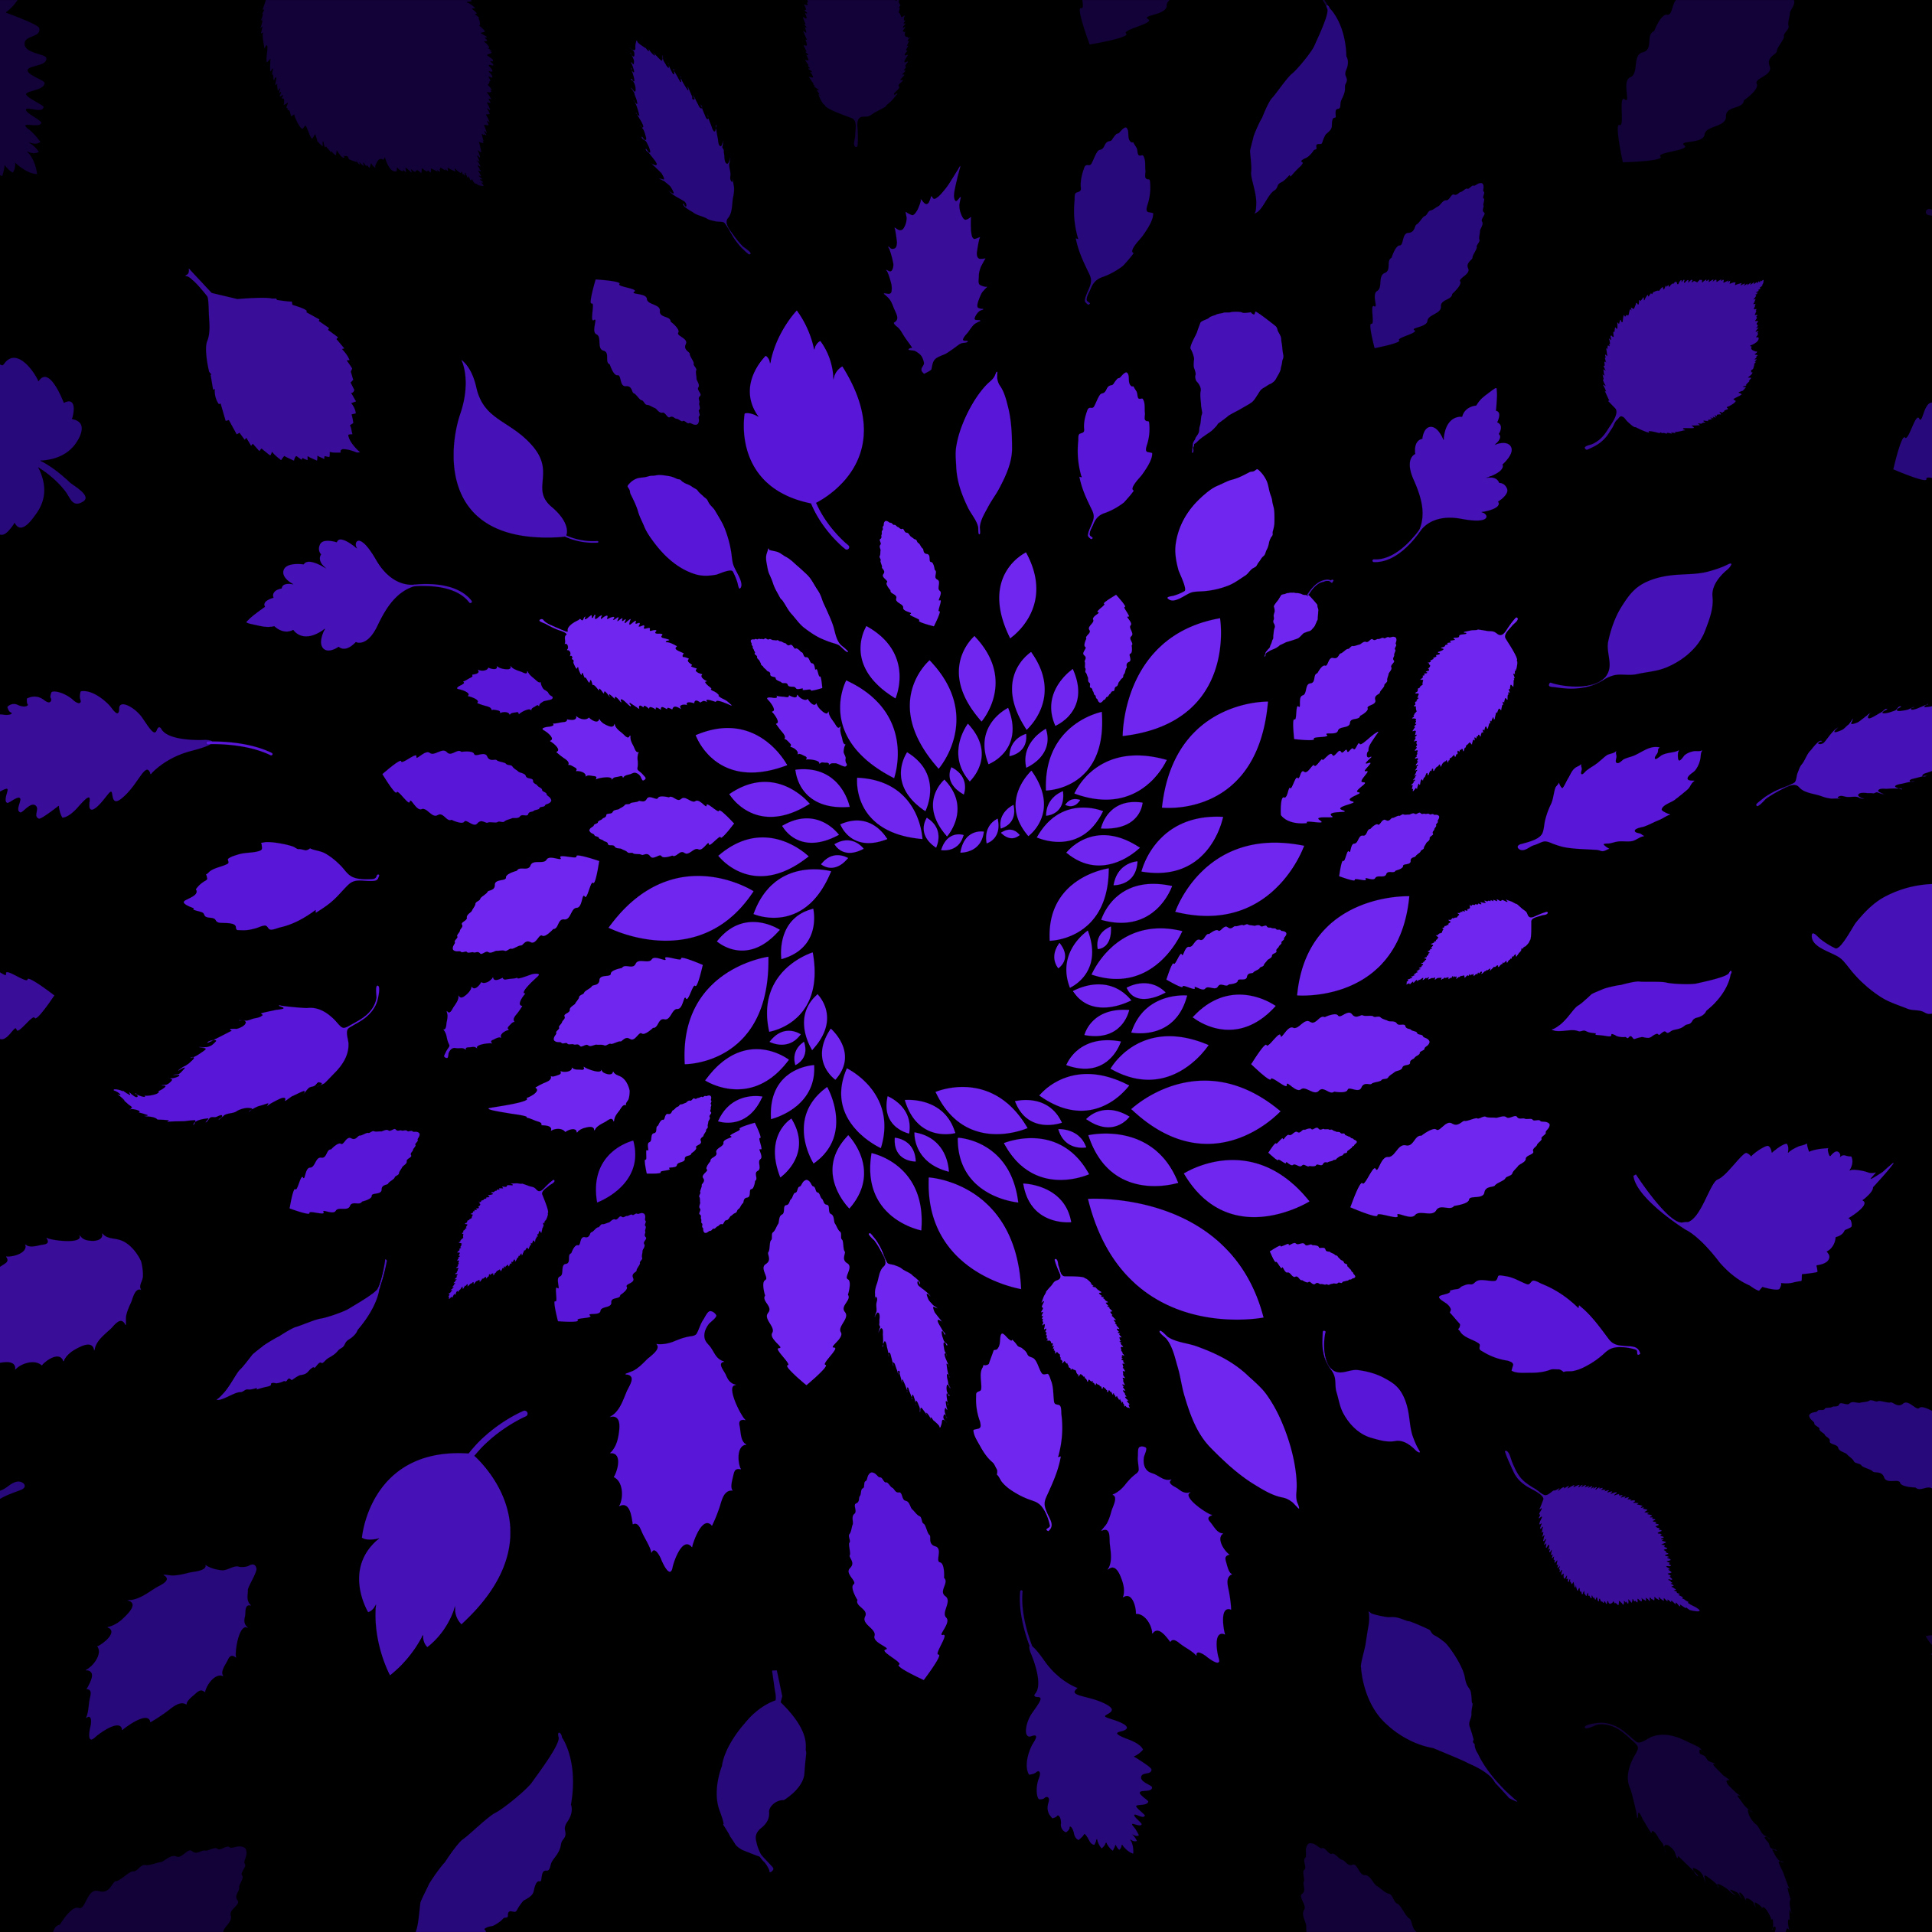 Apple logo Wallpaper 4K, Purple background, Pastel purple